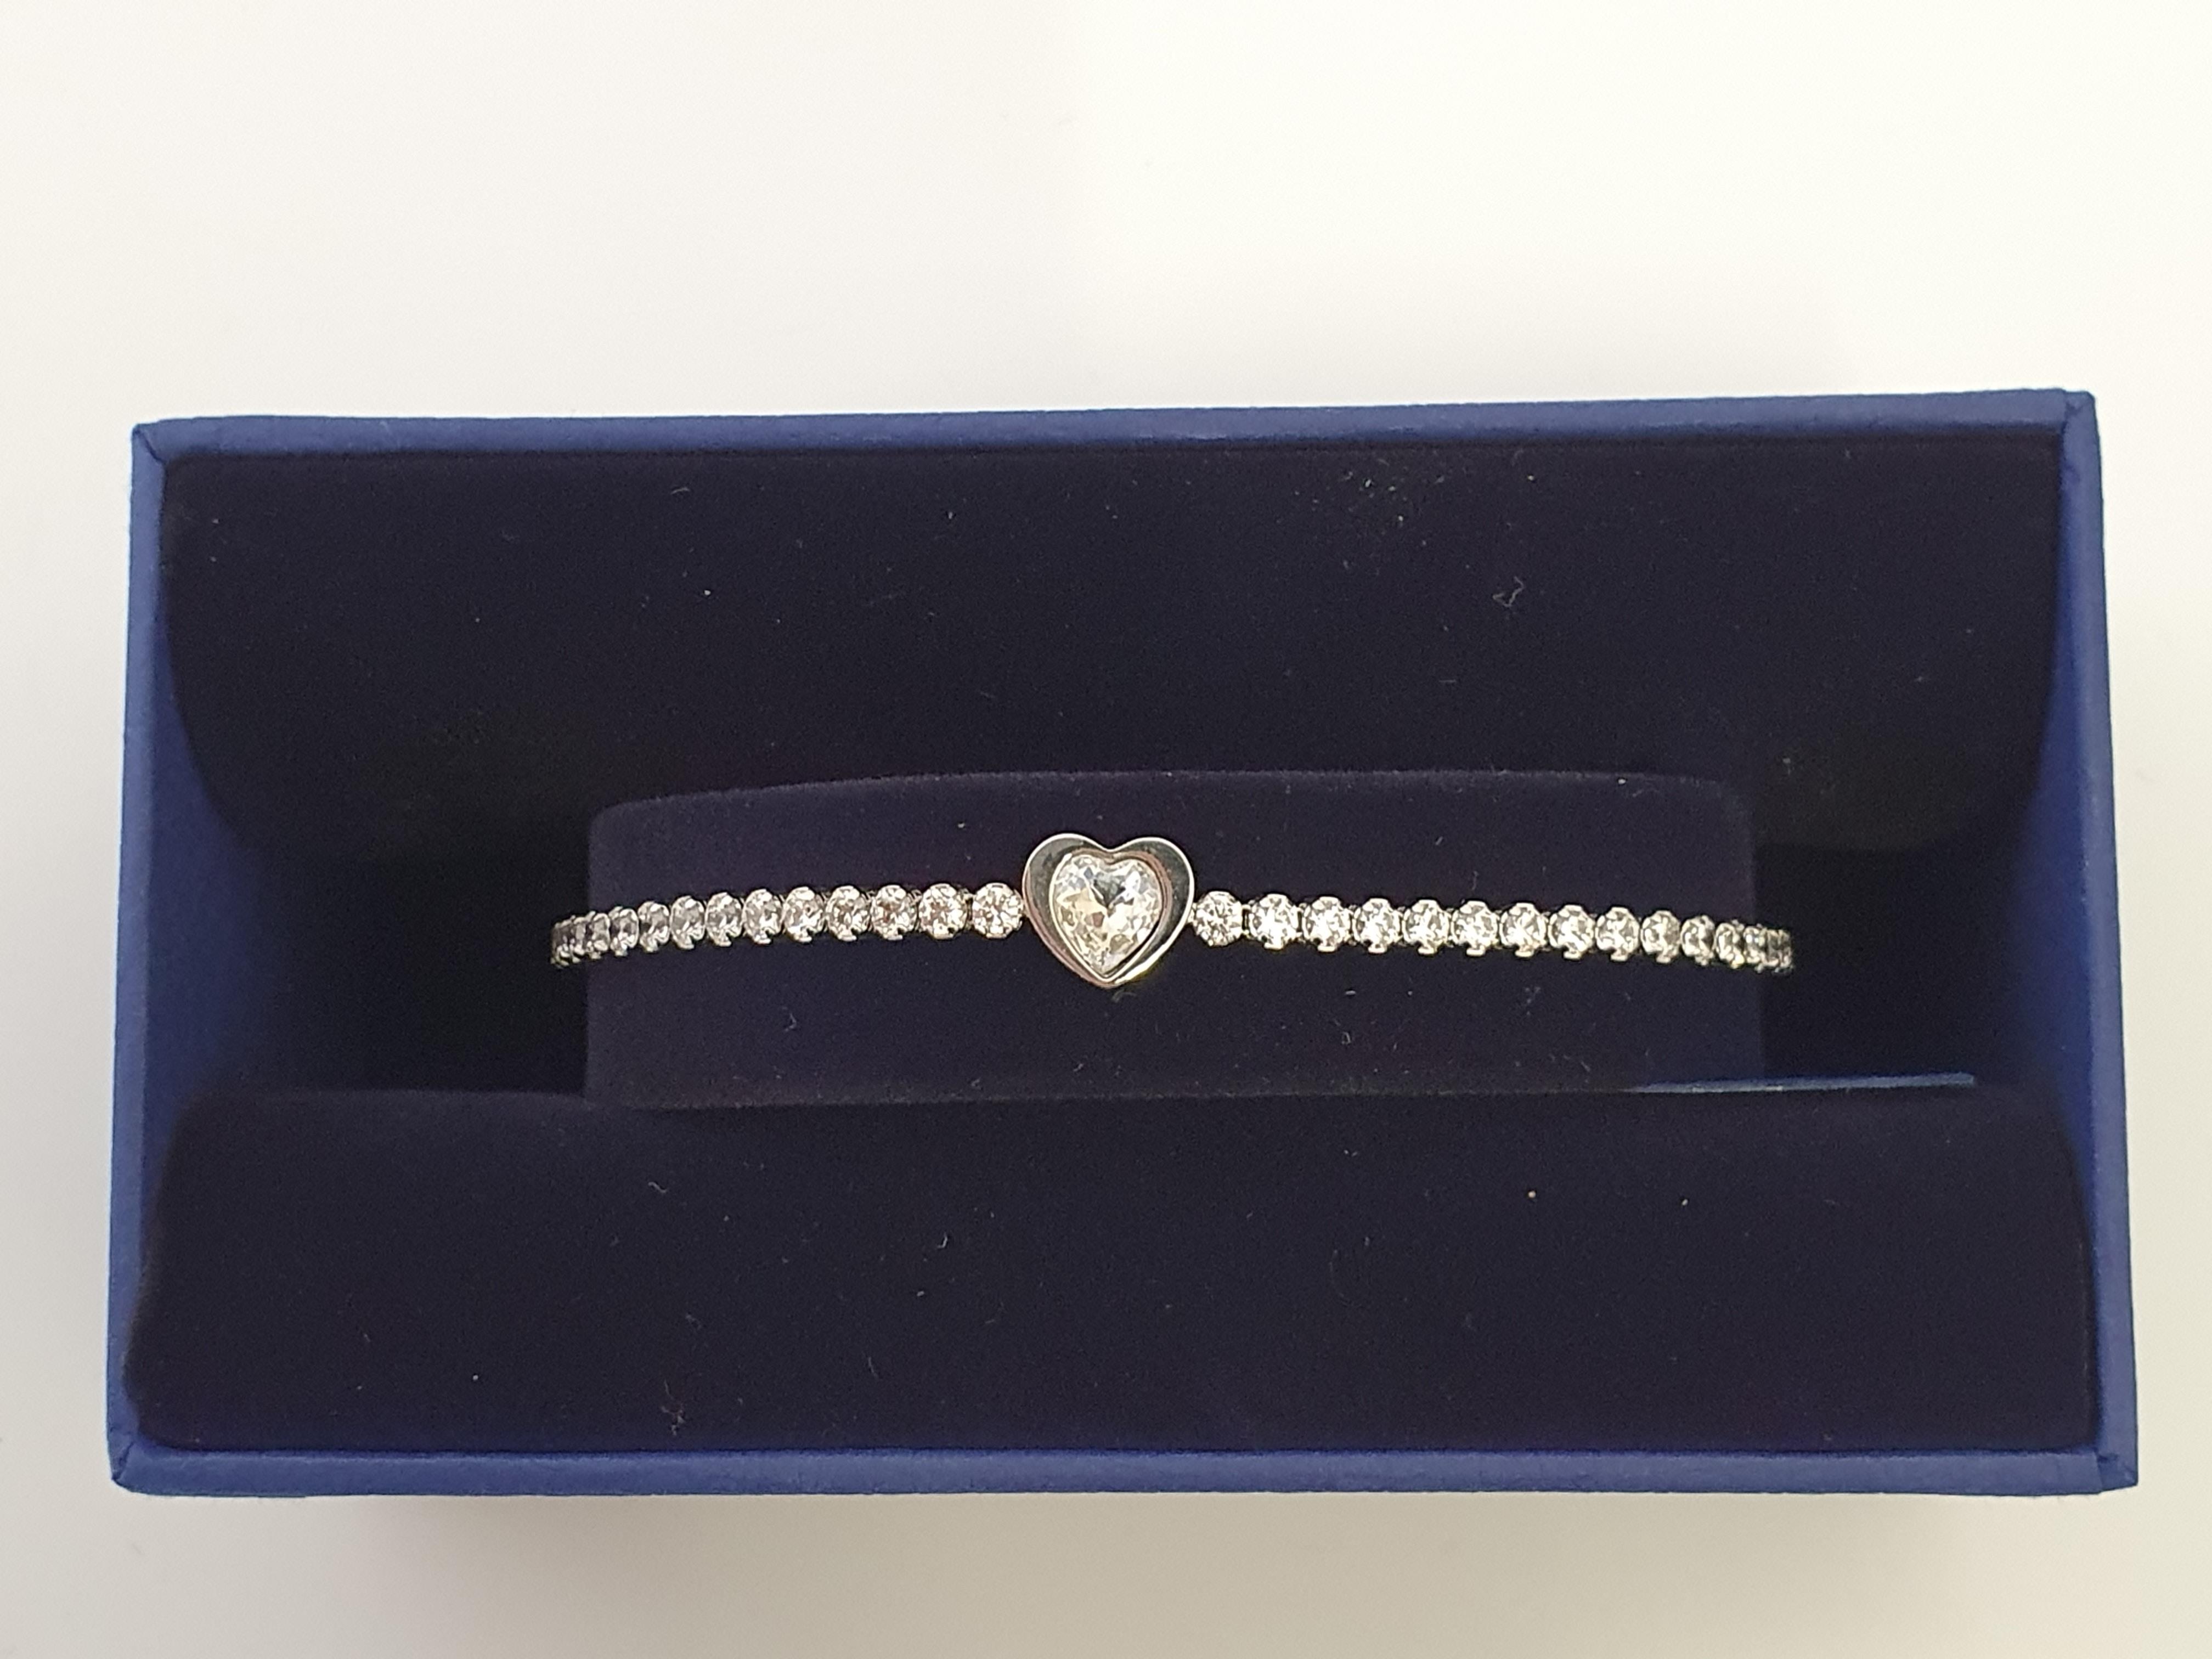 SWAROVSKI. Swarovski bracelet/bangle of heart design, boxed, 5349630 IMPORTANT: Bidding via the-